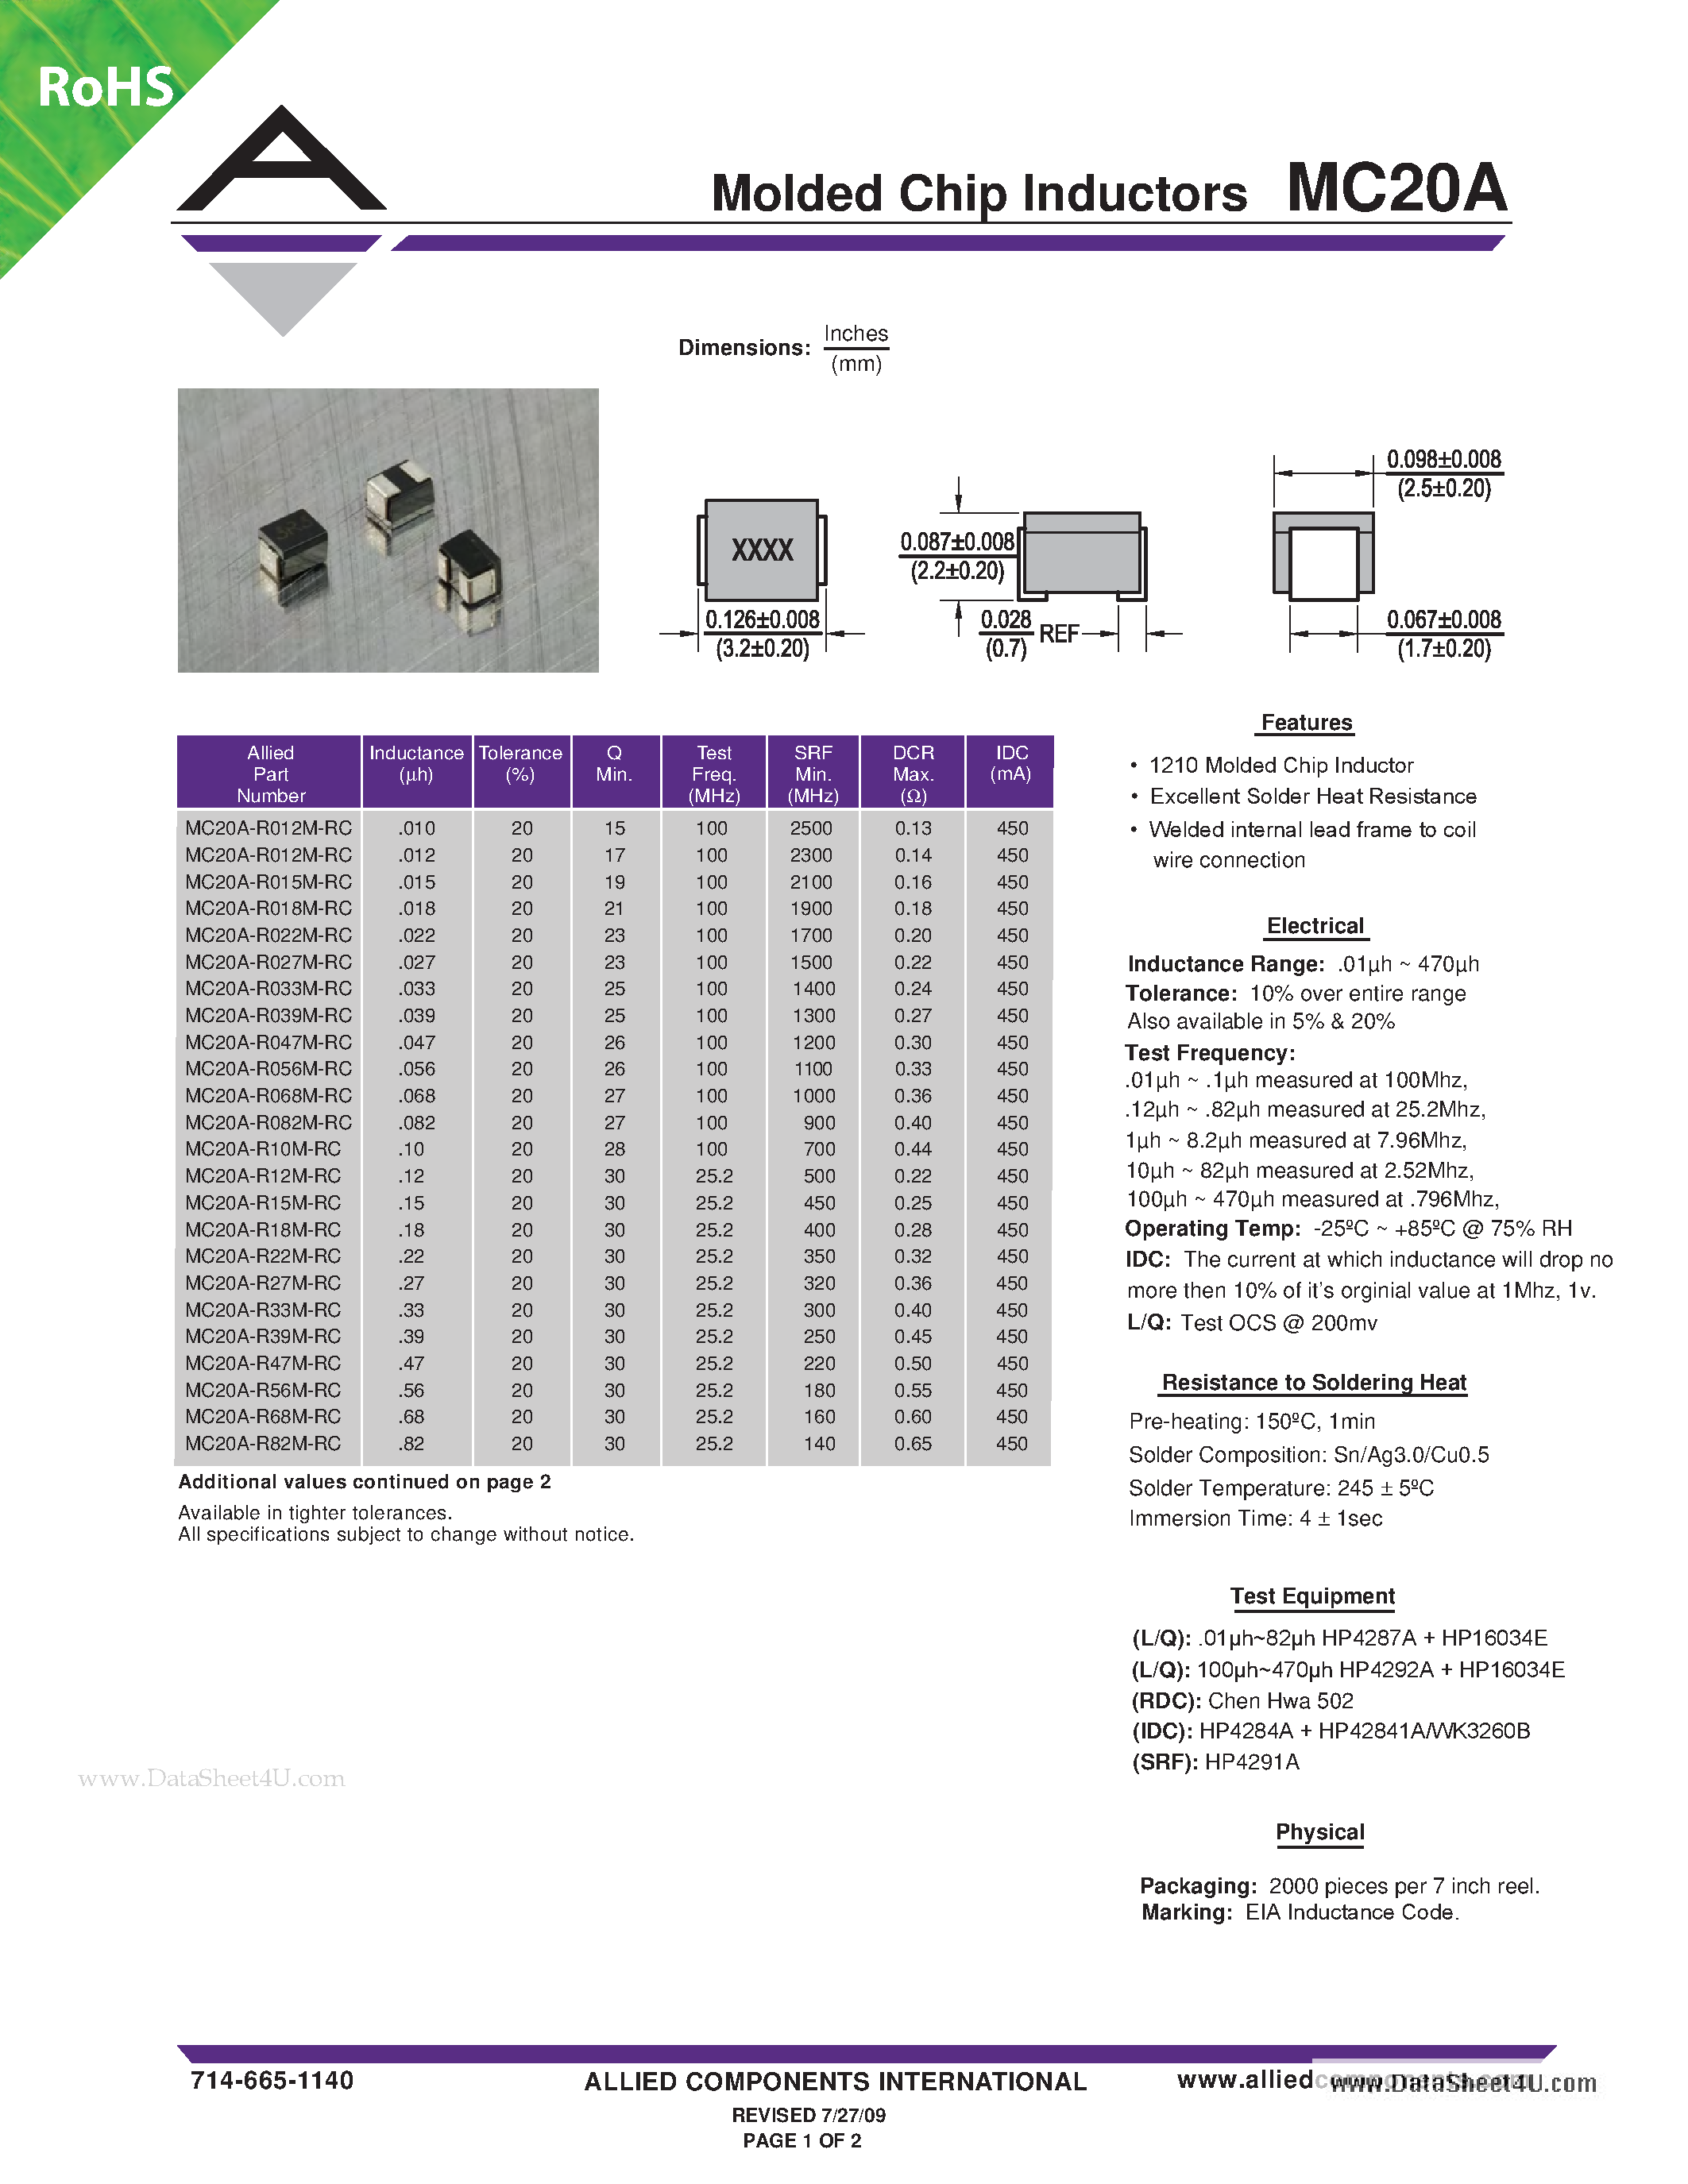 Даташит MC20A - Molded Chip Inductors страница 1